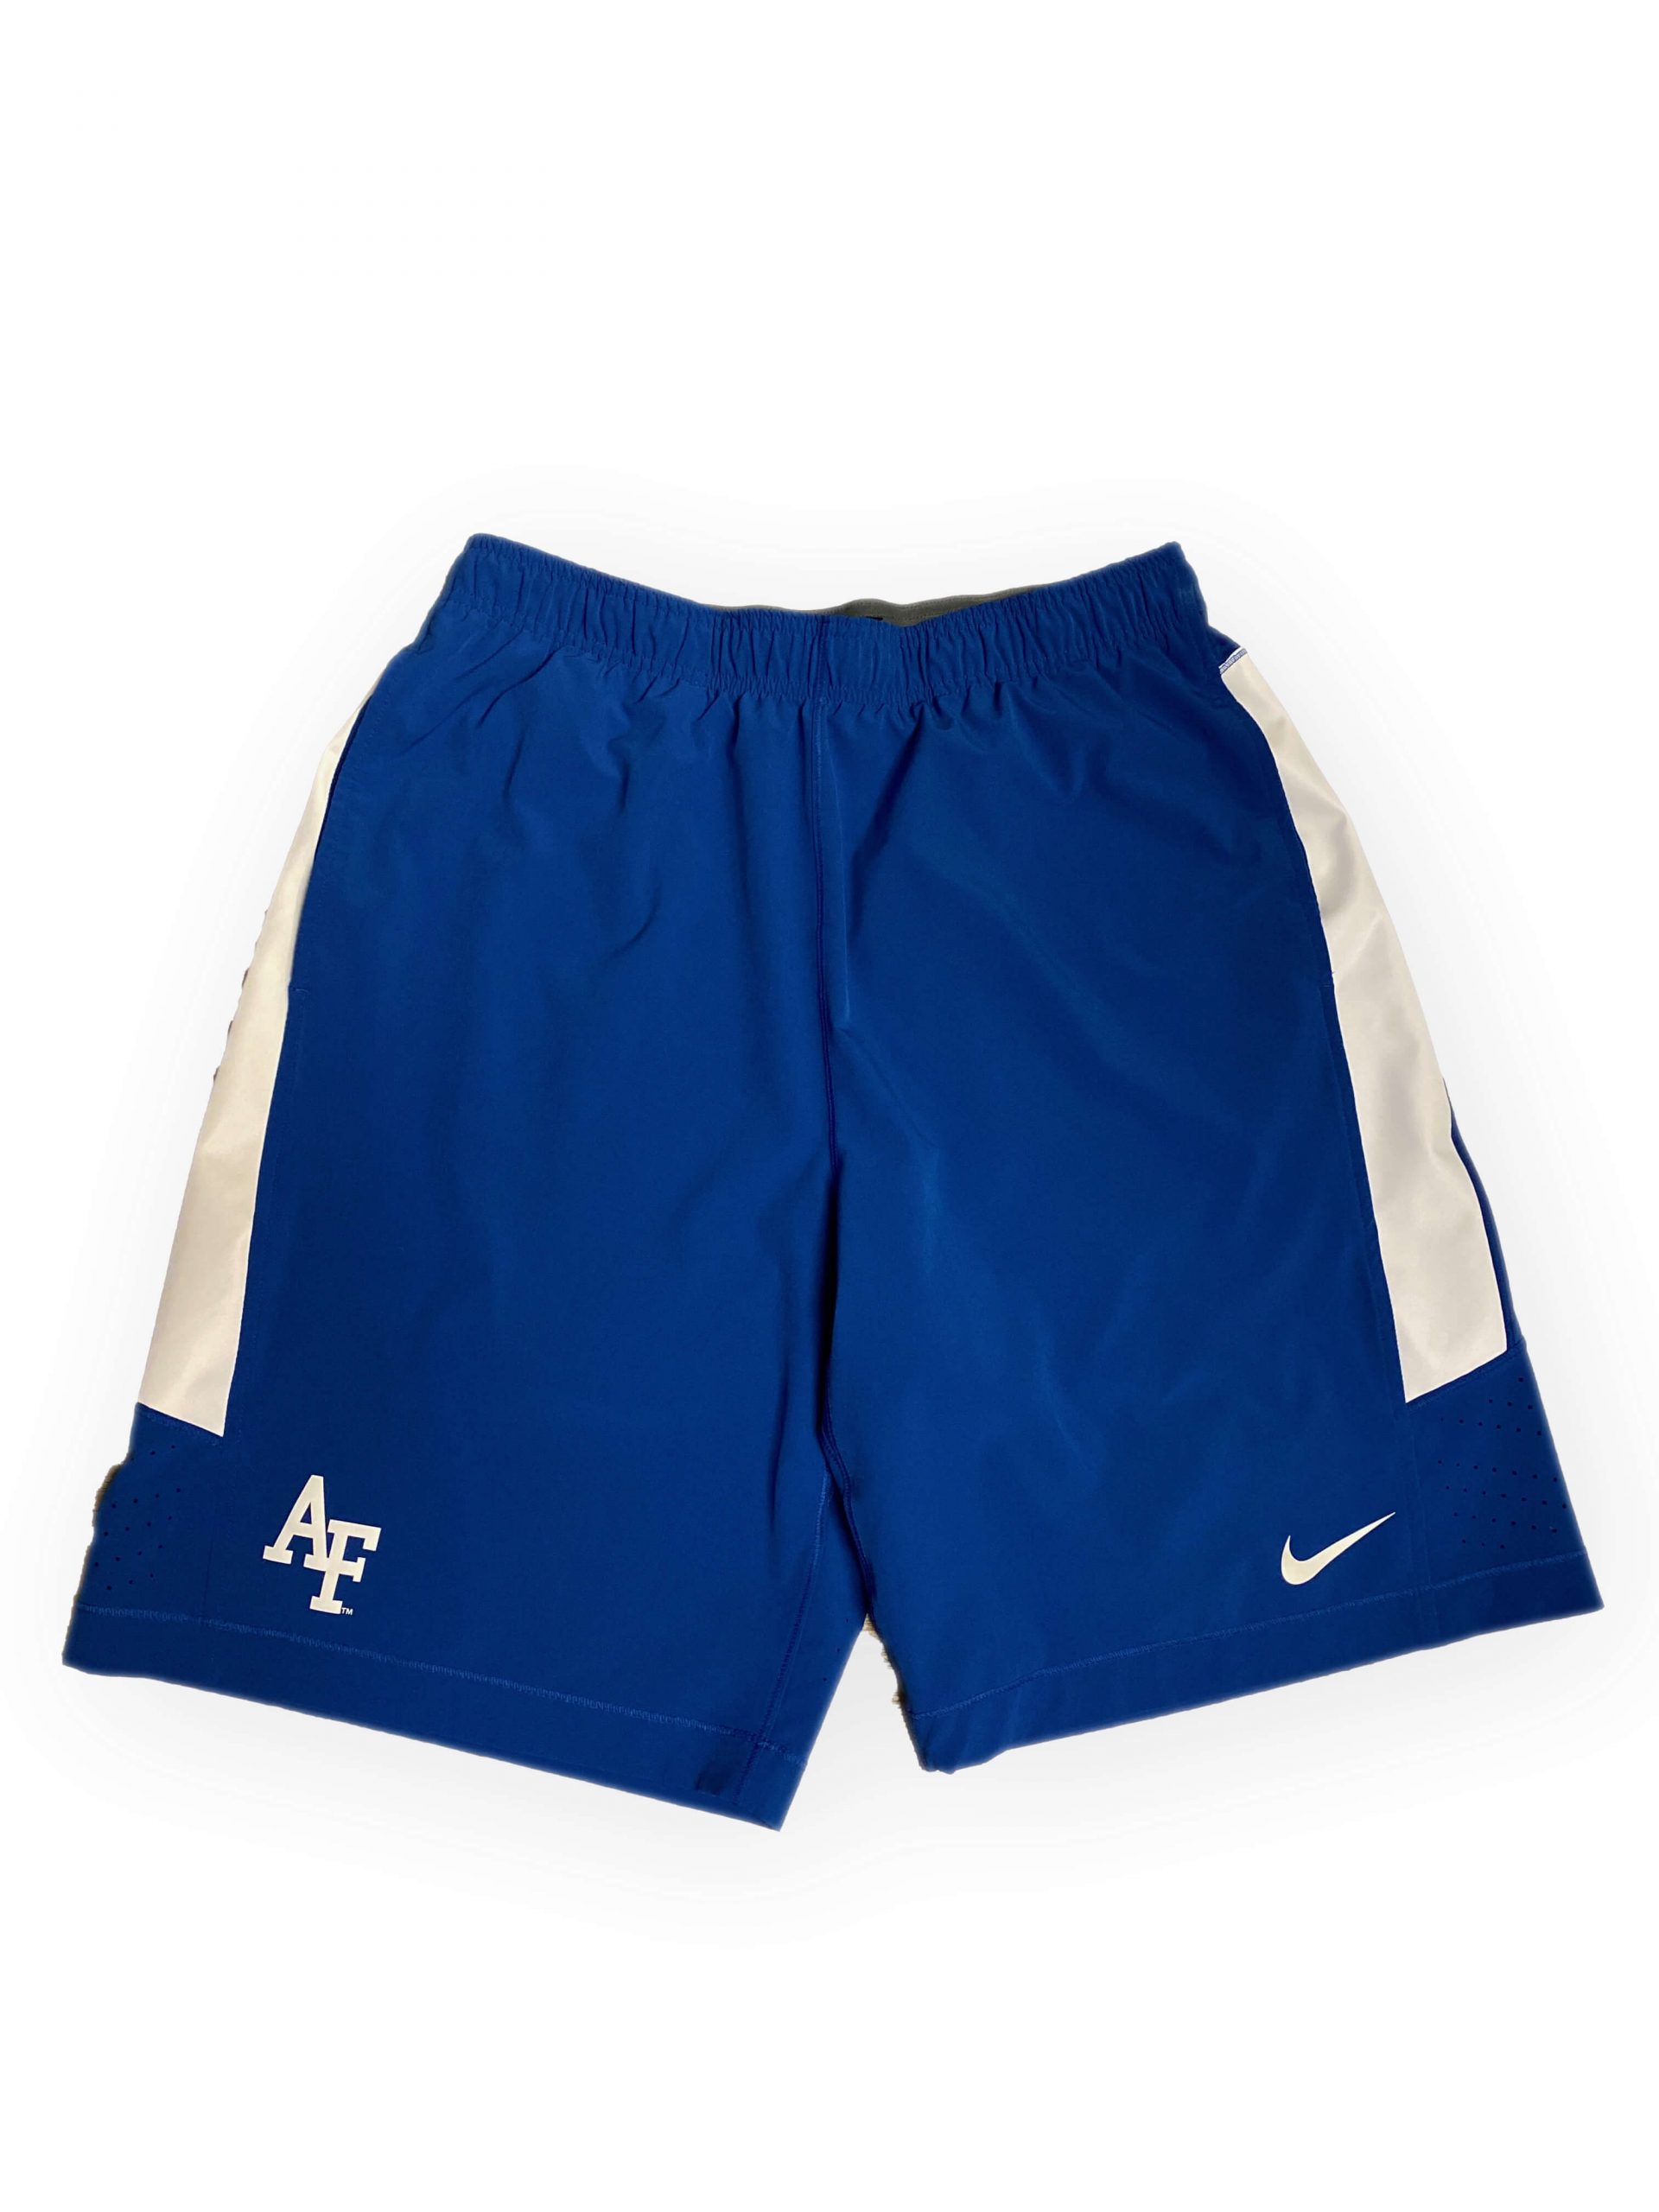 Air Force Shorts : NARP Clothing